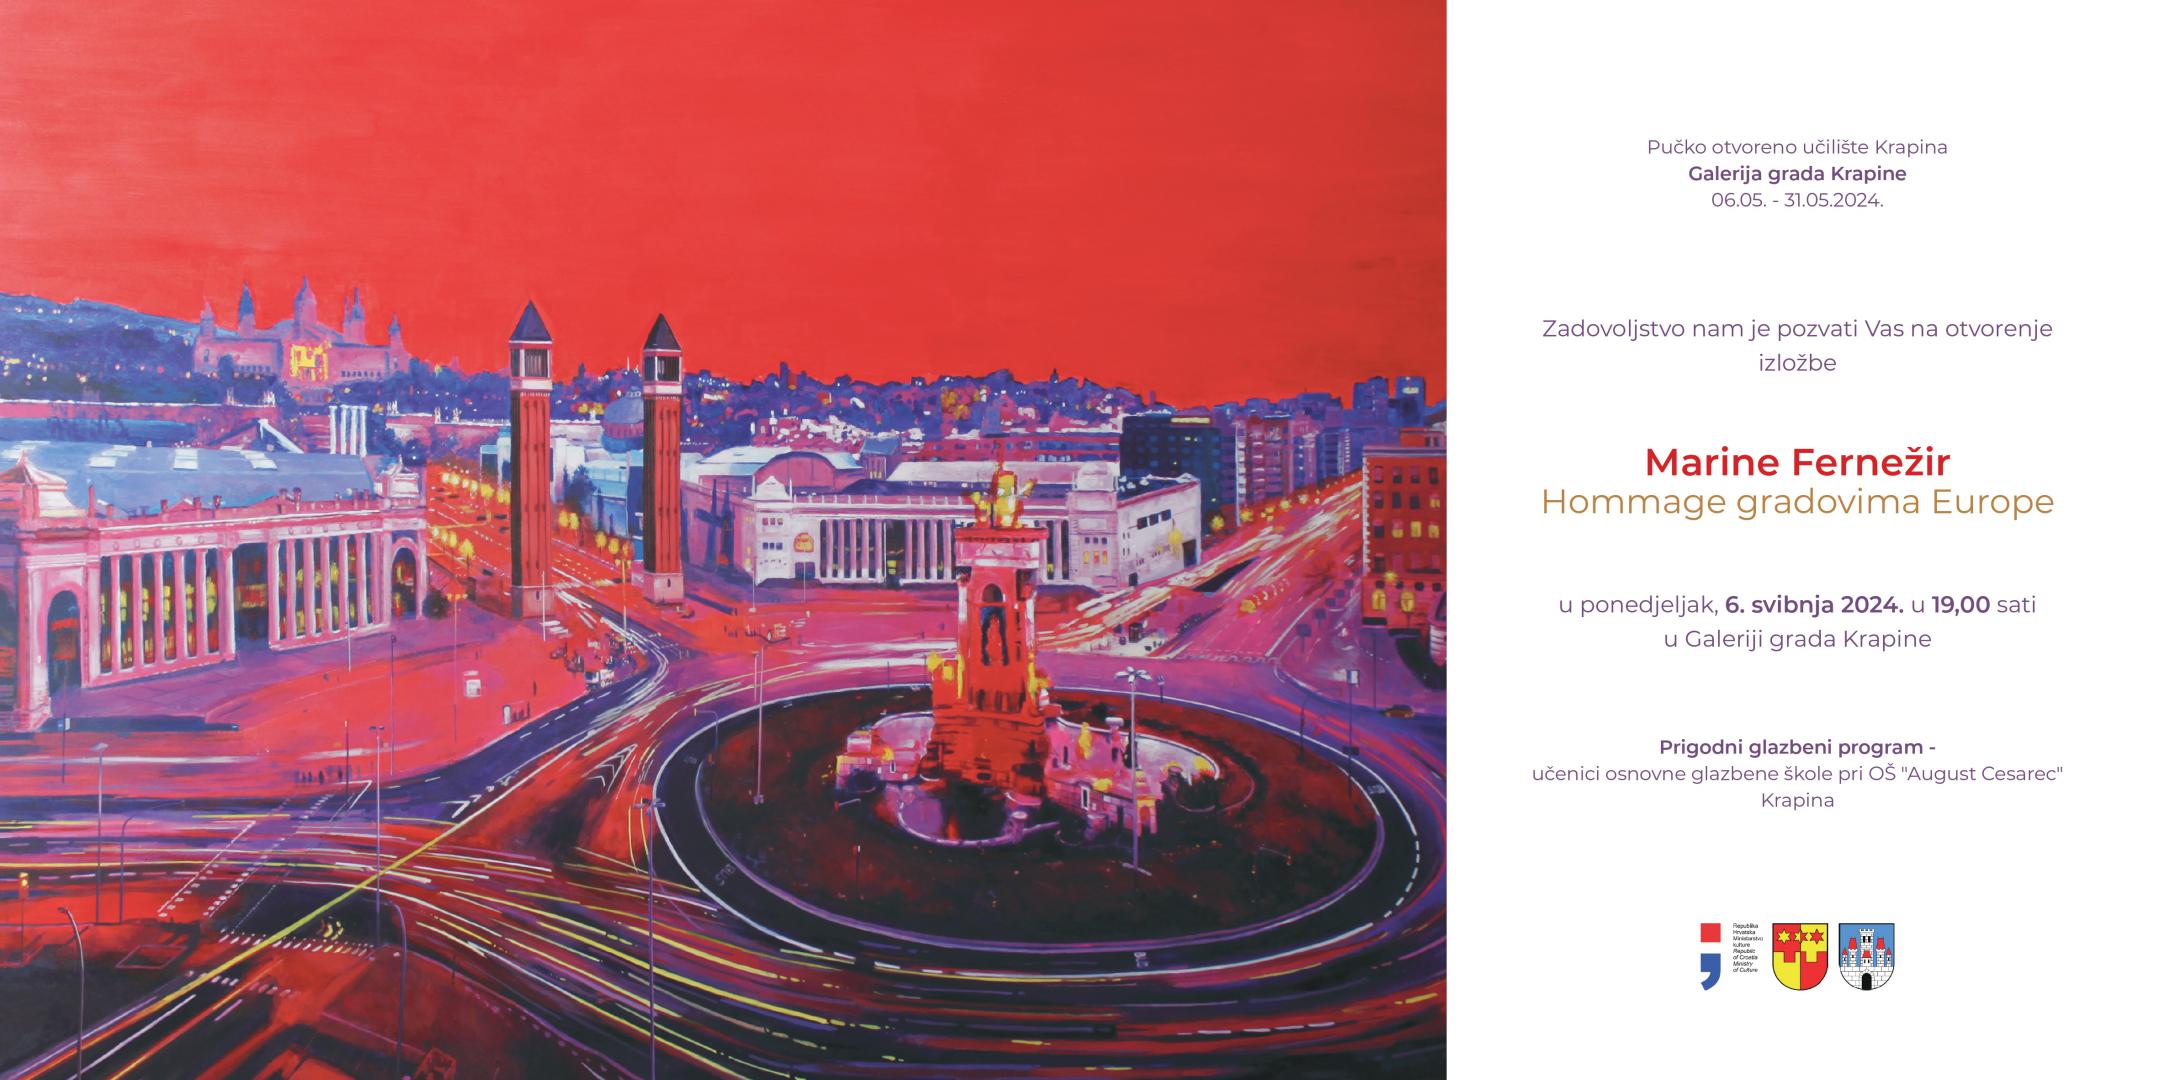 Izložba "Hommage gradovima Europe" u Galeriji grada Krapine